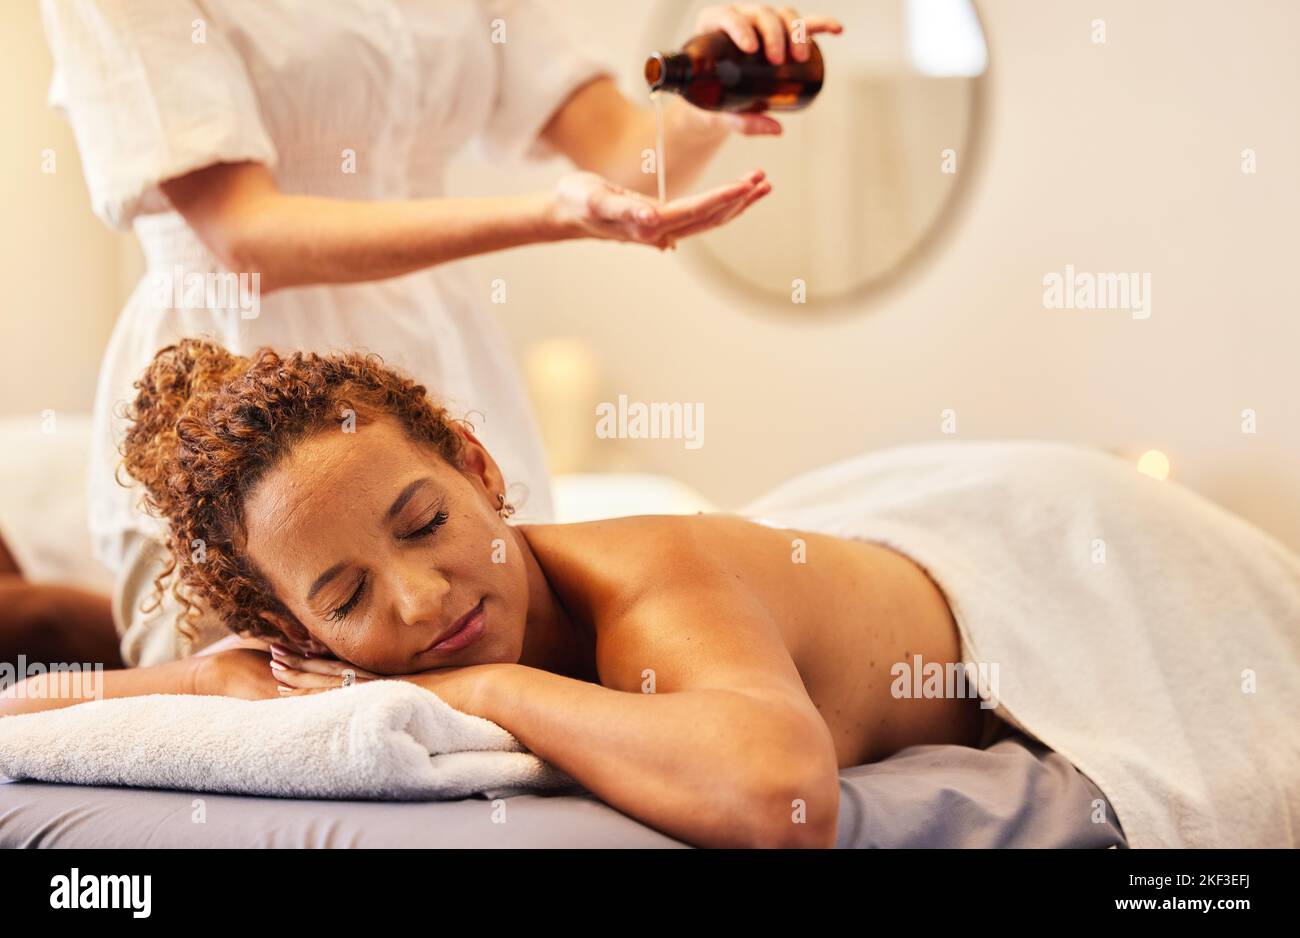 Spa, masaje de lujo y mujer con aceite esencial para recuperar el masaje para el bienestar en el salón de belleza. Salud, belleza y mujer negra con masaje Foto de stock